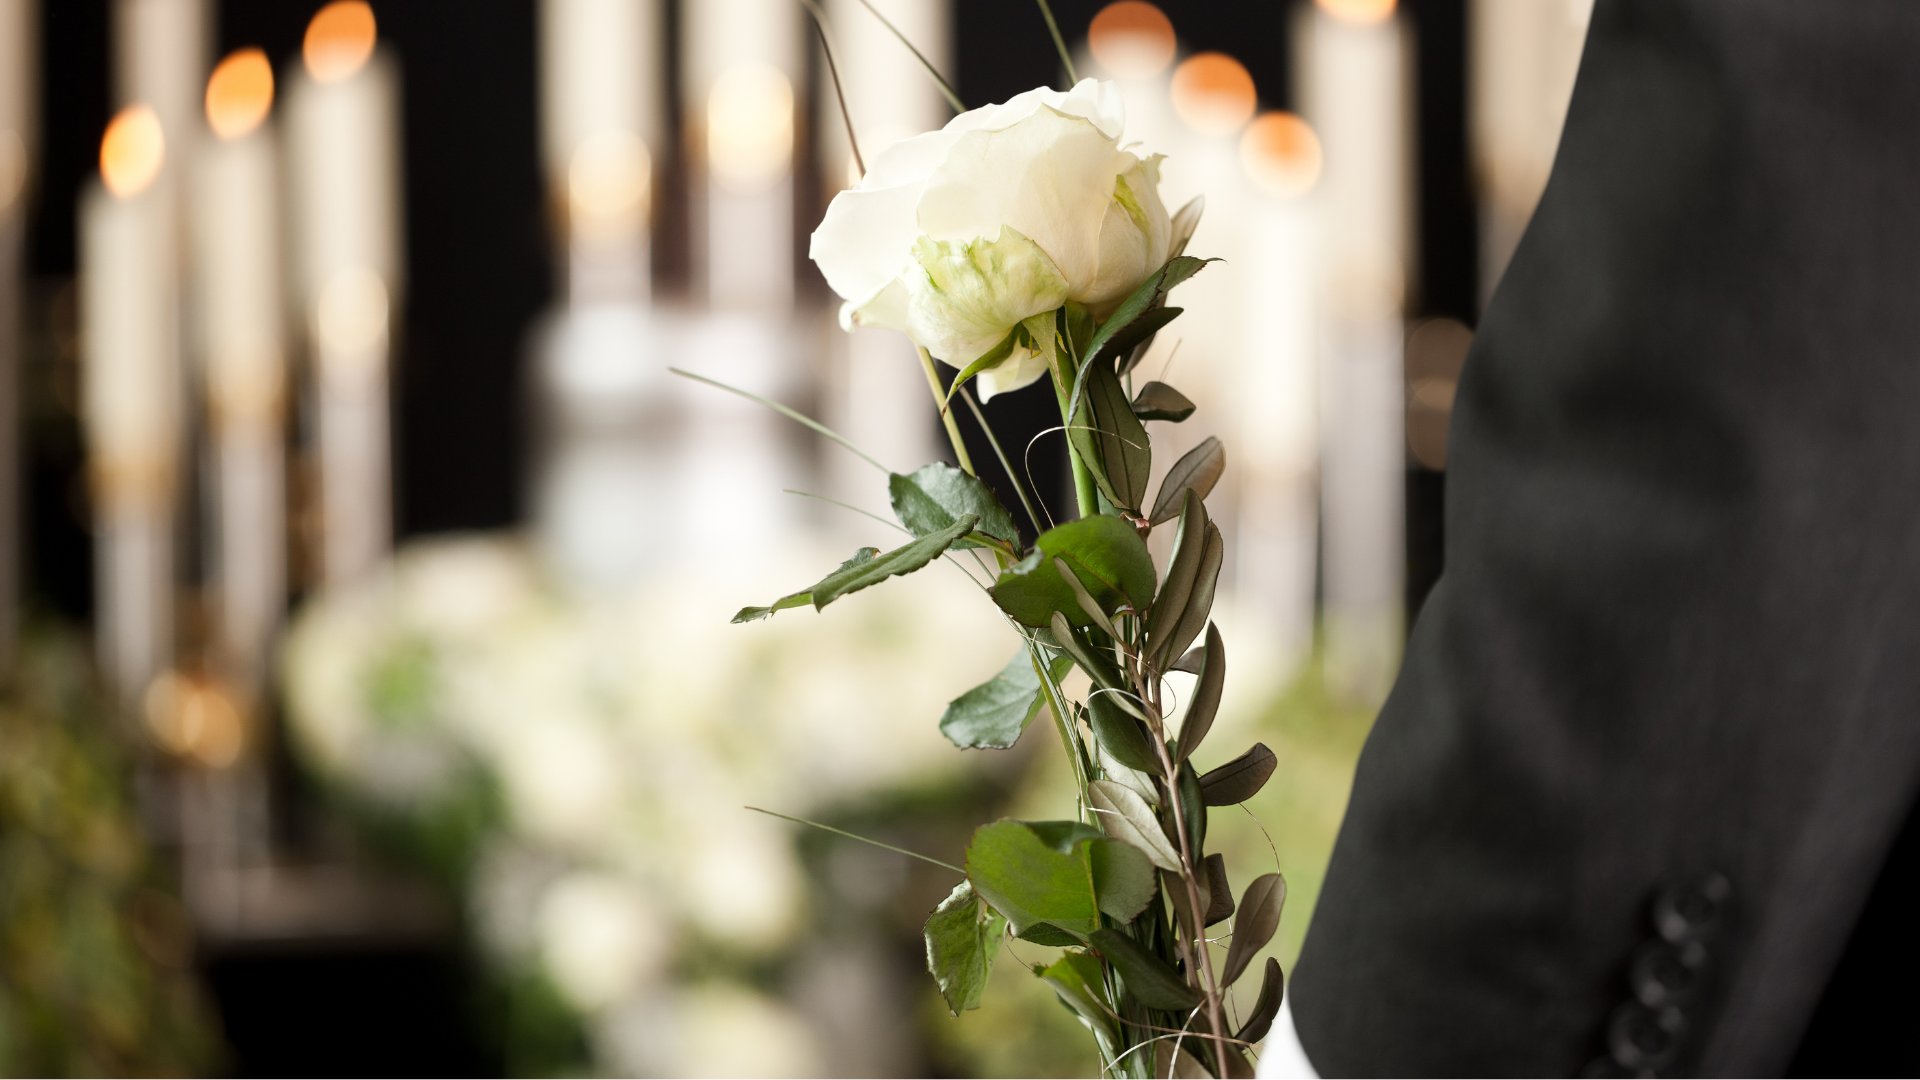 Em primeiro plano, um resquício de um terno e uma flor branca. Ao fundo, velas desfocadas.